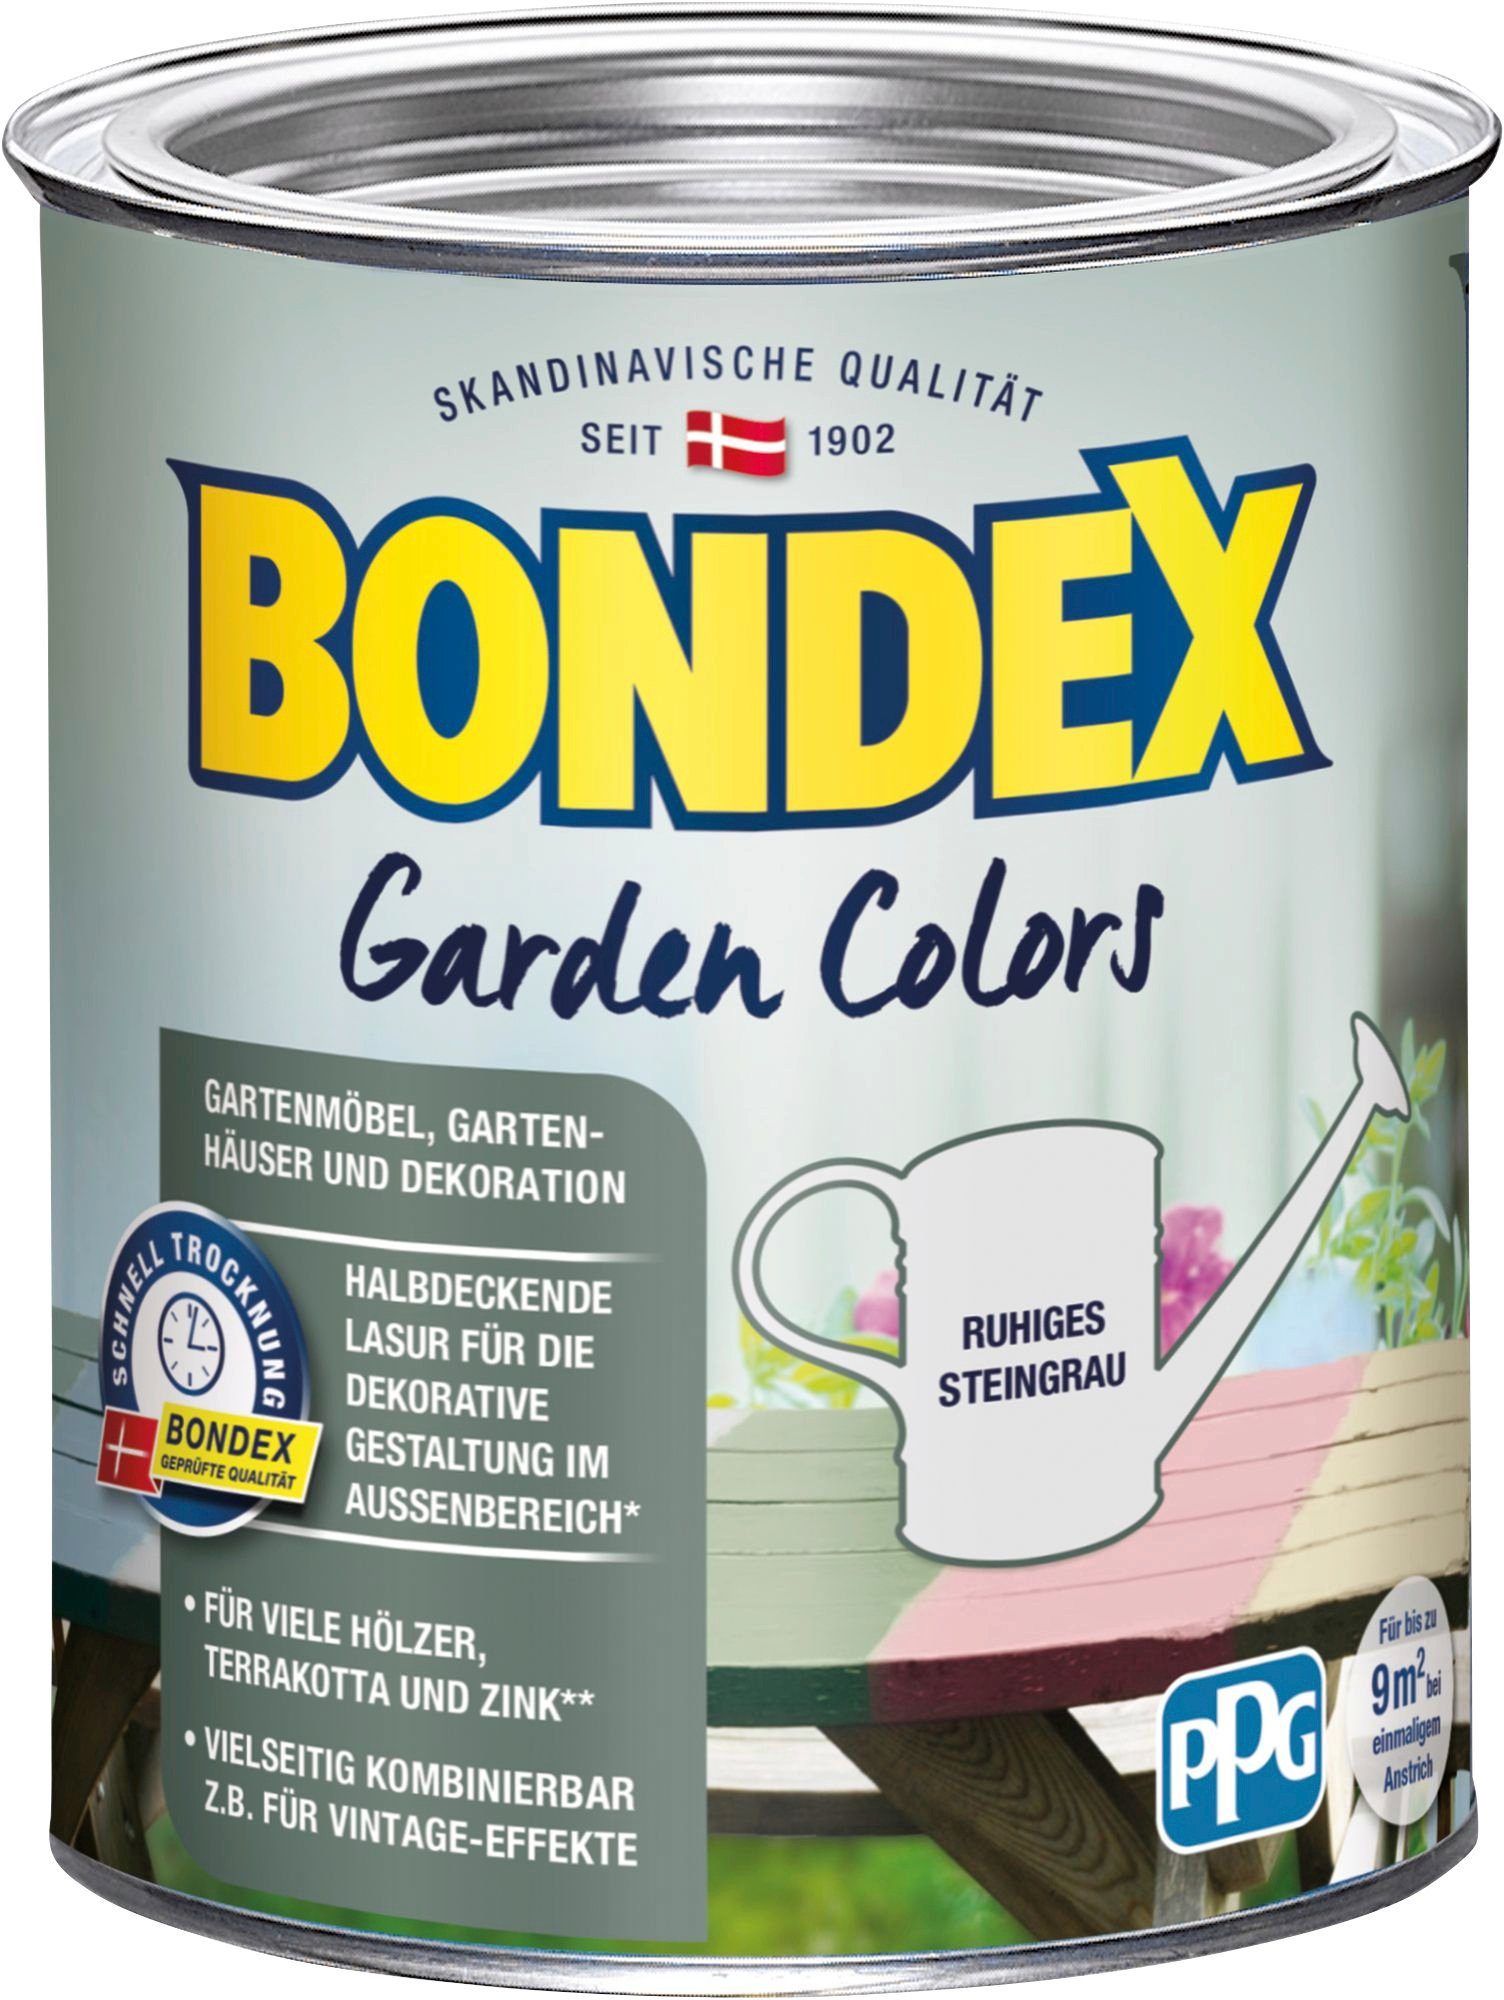 Bondex Wetterschutzfarbe GARDEN COLORS, Behagliches Grün, 0,75 Liter Inhalt Ruhiges Steingrau